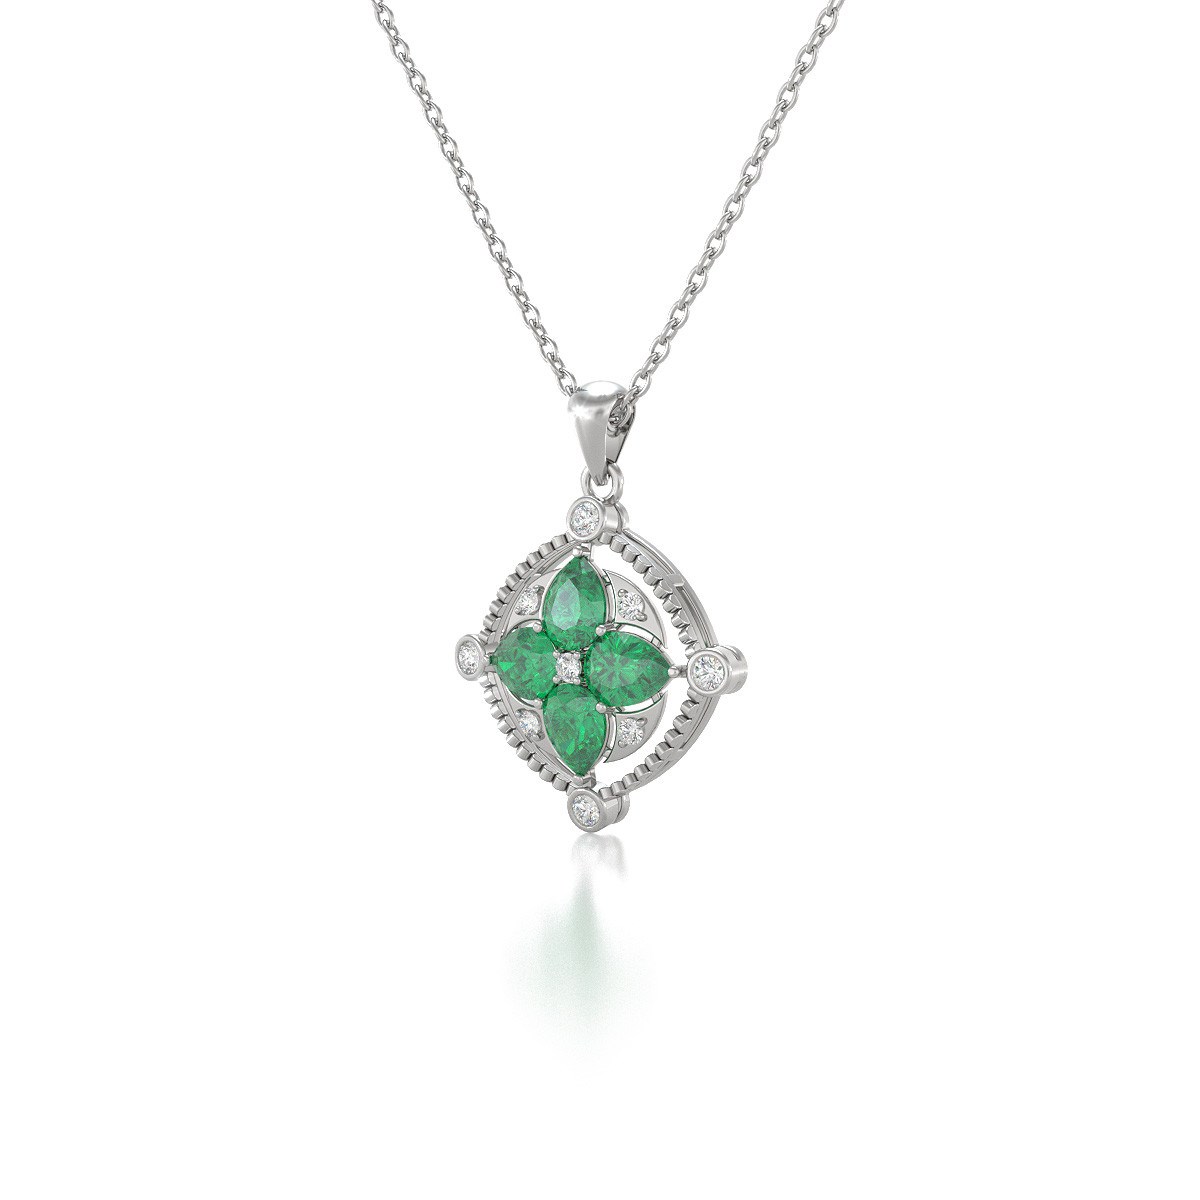 Collier Pendentif Or Blanc Médaillon Emeraude et Diamants - Bijou d'Exception pour un Anniversaire Inoubliable | Aden - vue 3